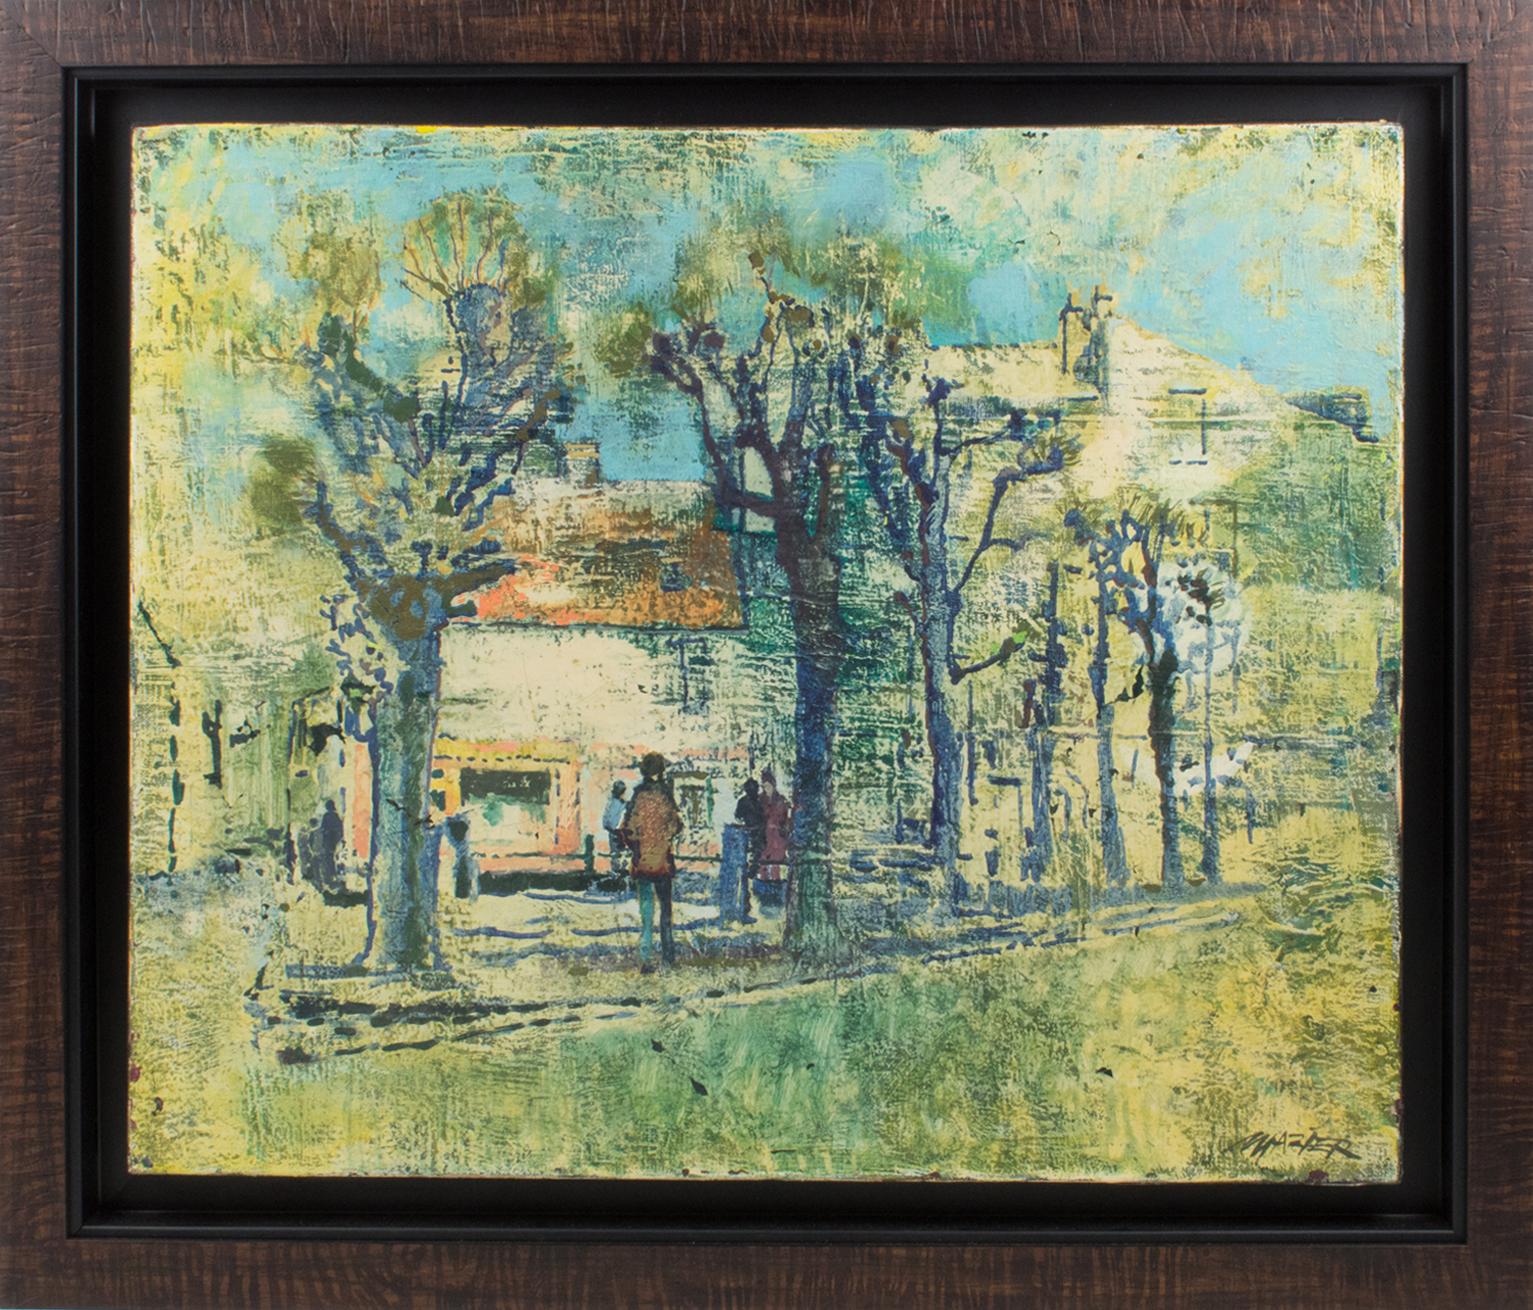 Cette jolie composition moderniste à l'huile sur toile, typique des années 1950, représente une maison dans un village à la campagne avec des arbres bleus imaginaires, conçue par Claude Richard Mazier (France, 1926 - 2011). Le tableau porte la